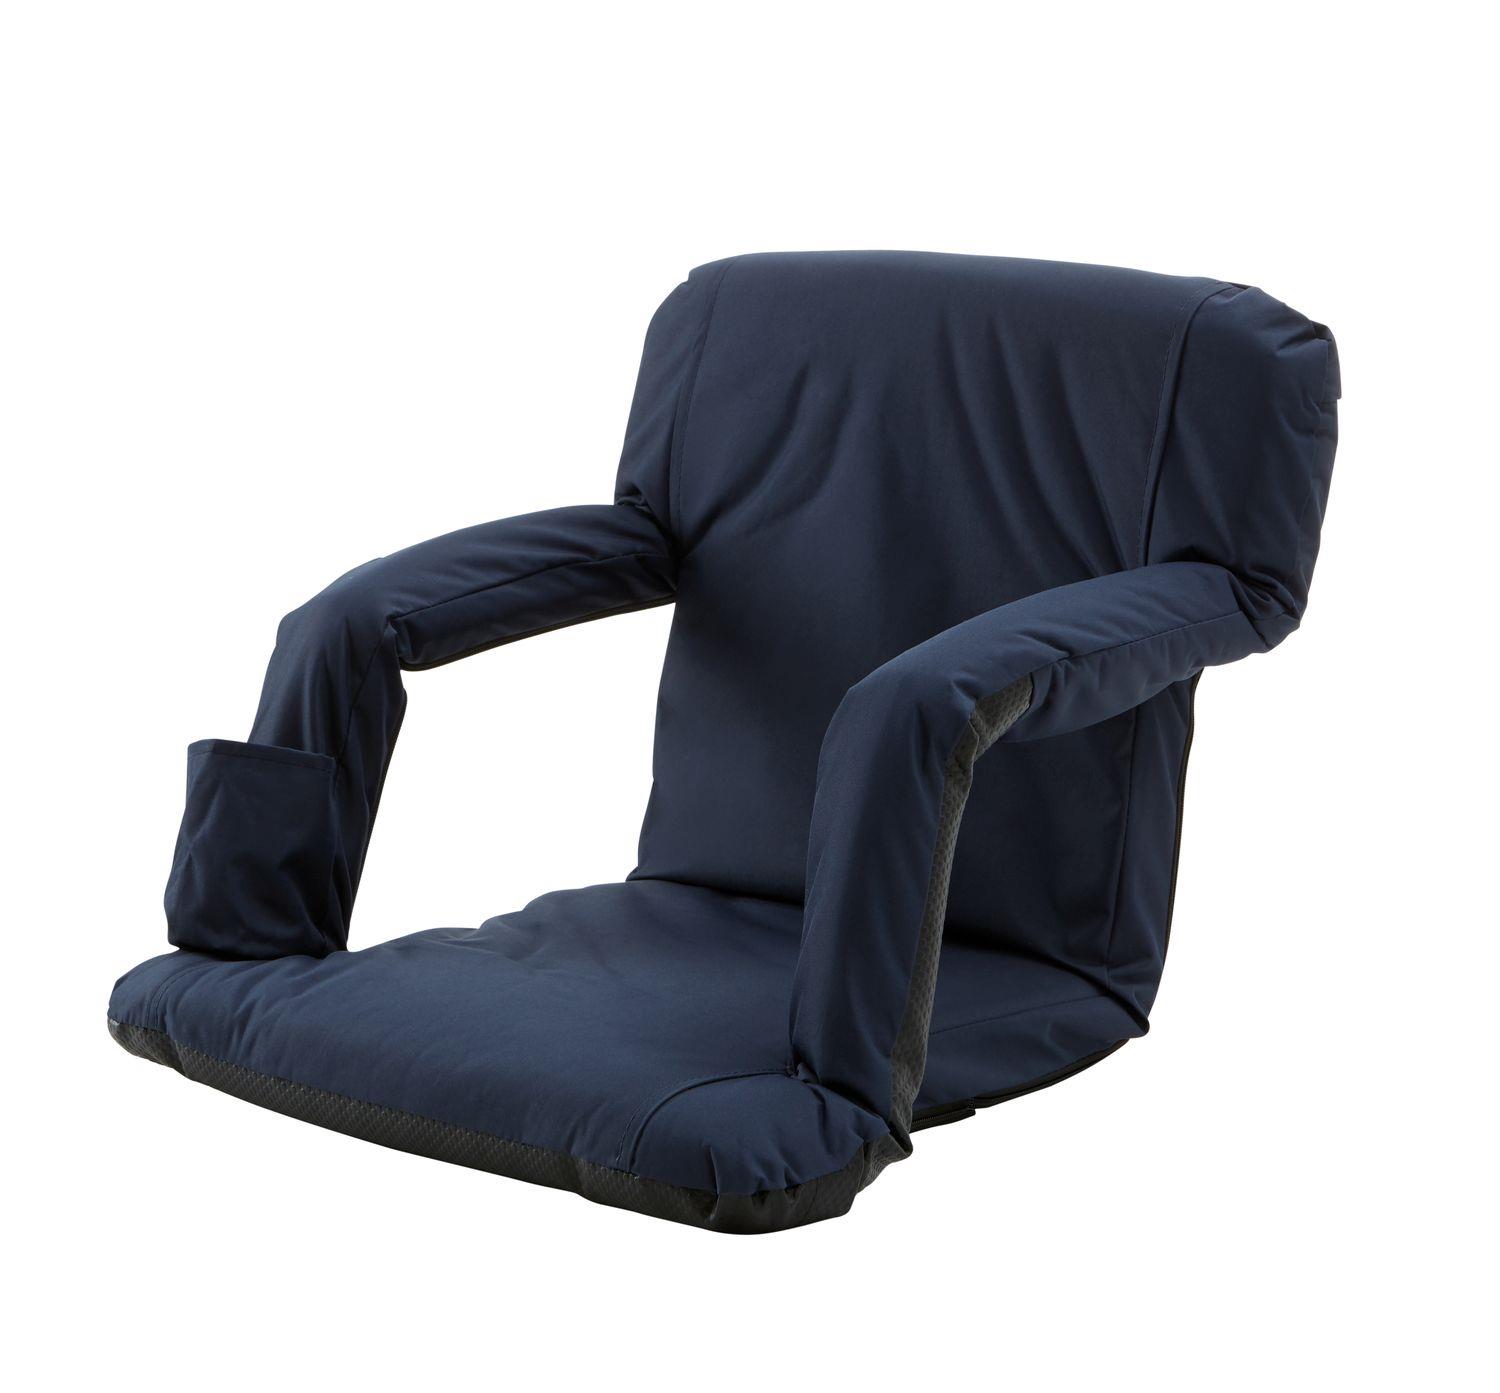 1852 Komfort-Sitzkissen mit Armlehnen Rückenlehne 6-fach verstellbar B=52cm L=82cm D=7cm blau